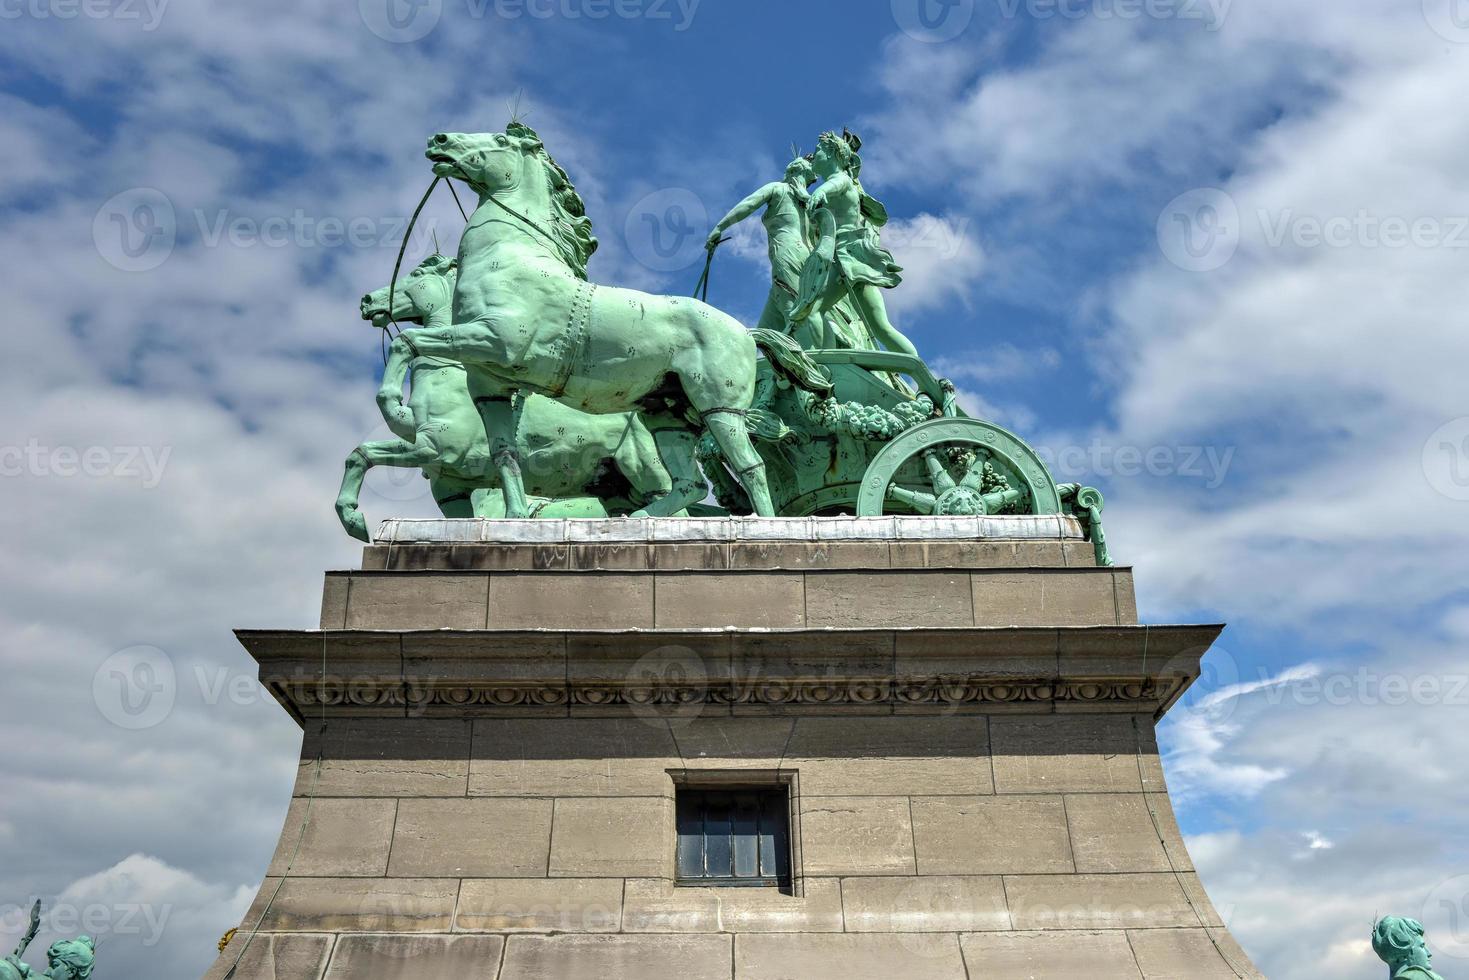 arco triunfal en el parque del cincuentenario en bruselas, fue planeado para la exposición nacional de 1880 para conmemorar el 50 aniversario de la independencia de bélgica. foto